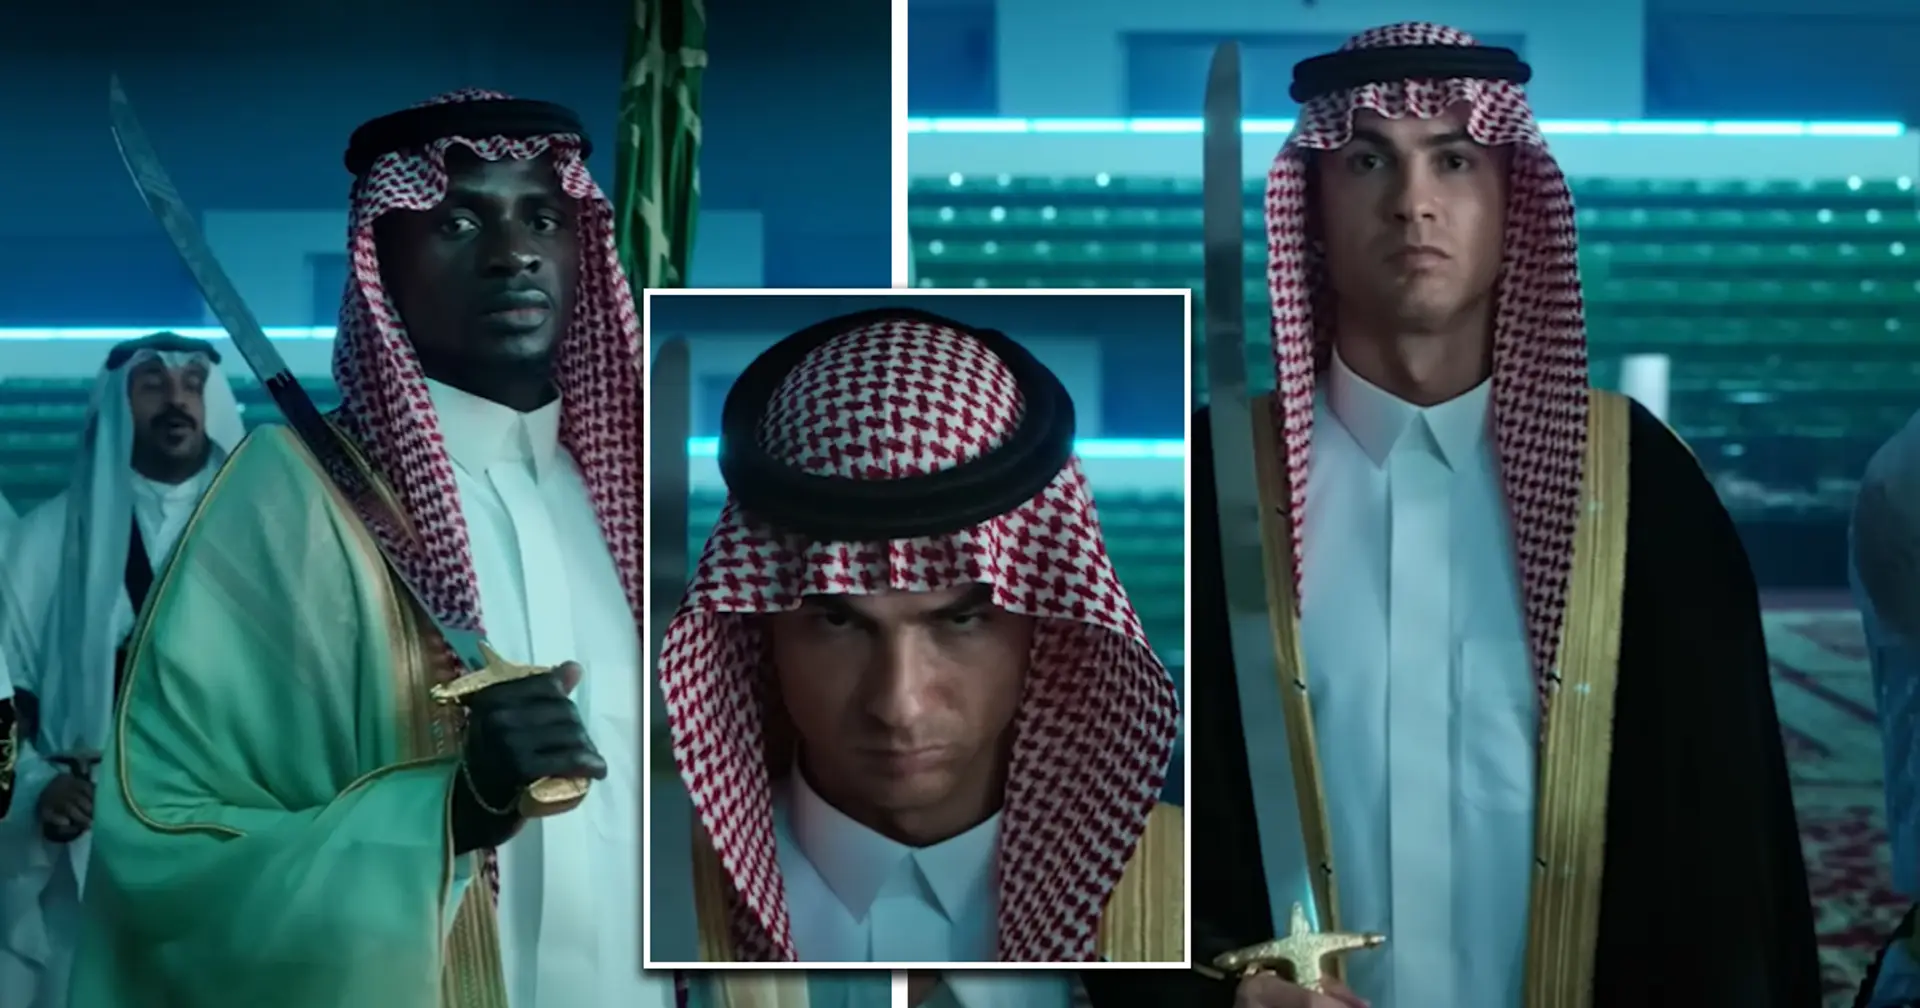 Das Team von Al-Nassr bekennt sich zur saudischen Kultur und trägt in einem Video traditionelle Kleidung und Schwerter